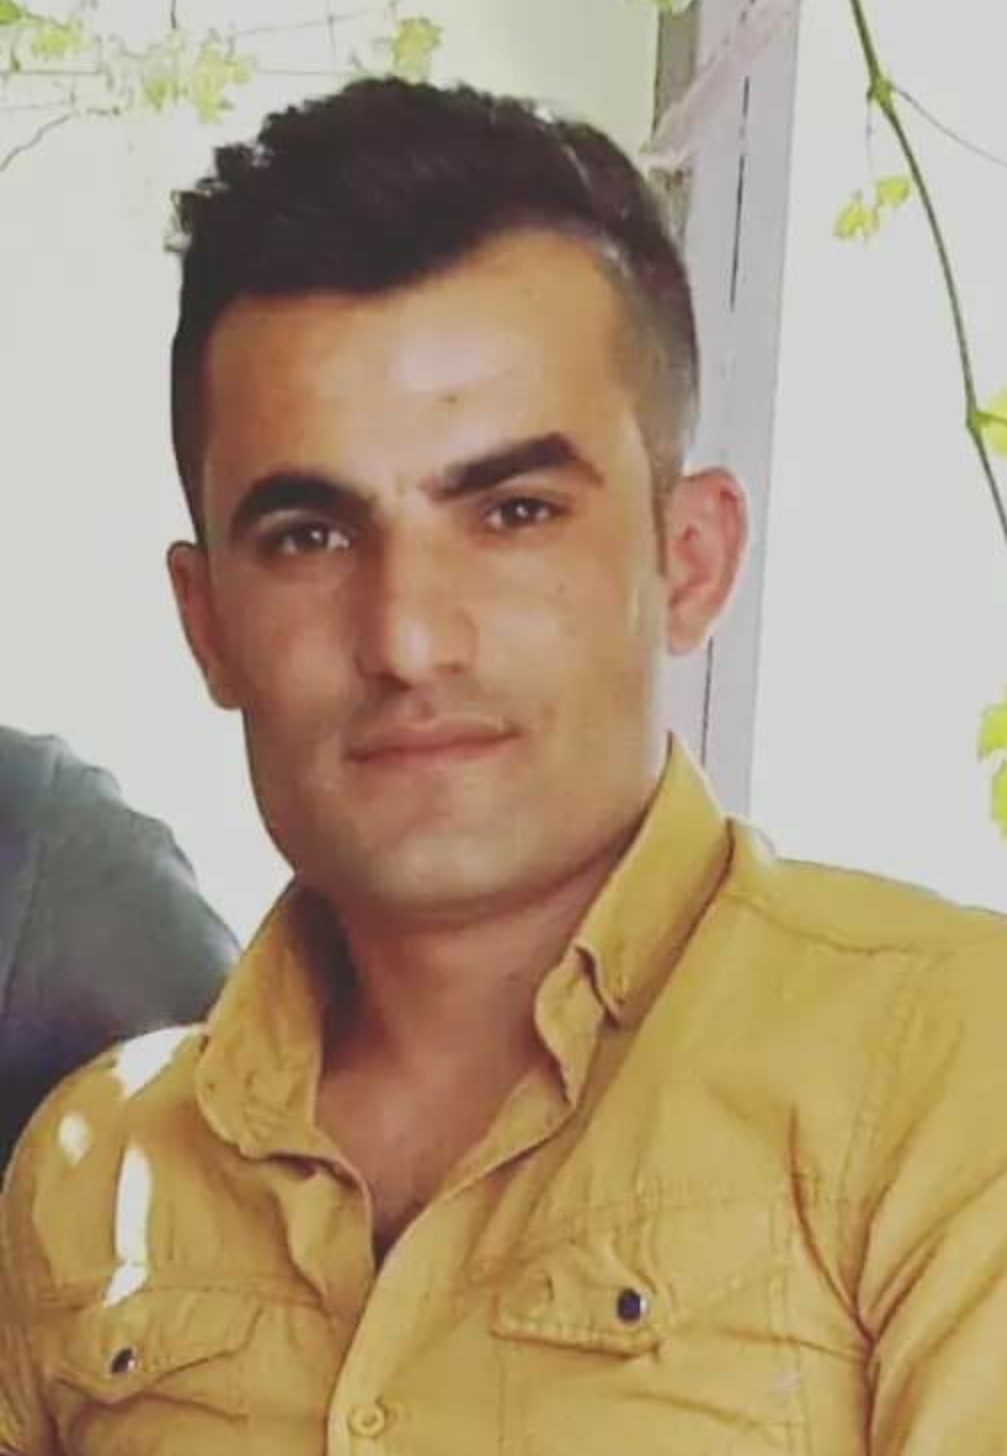 Kazada yaralanan Ahmet hastanede yaşam savaşını kaybetti